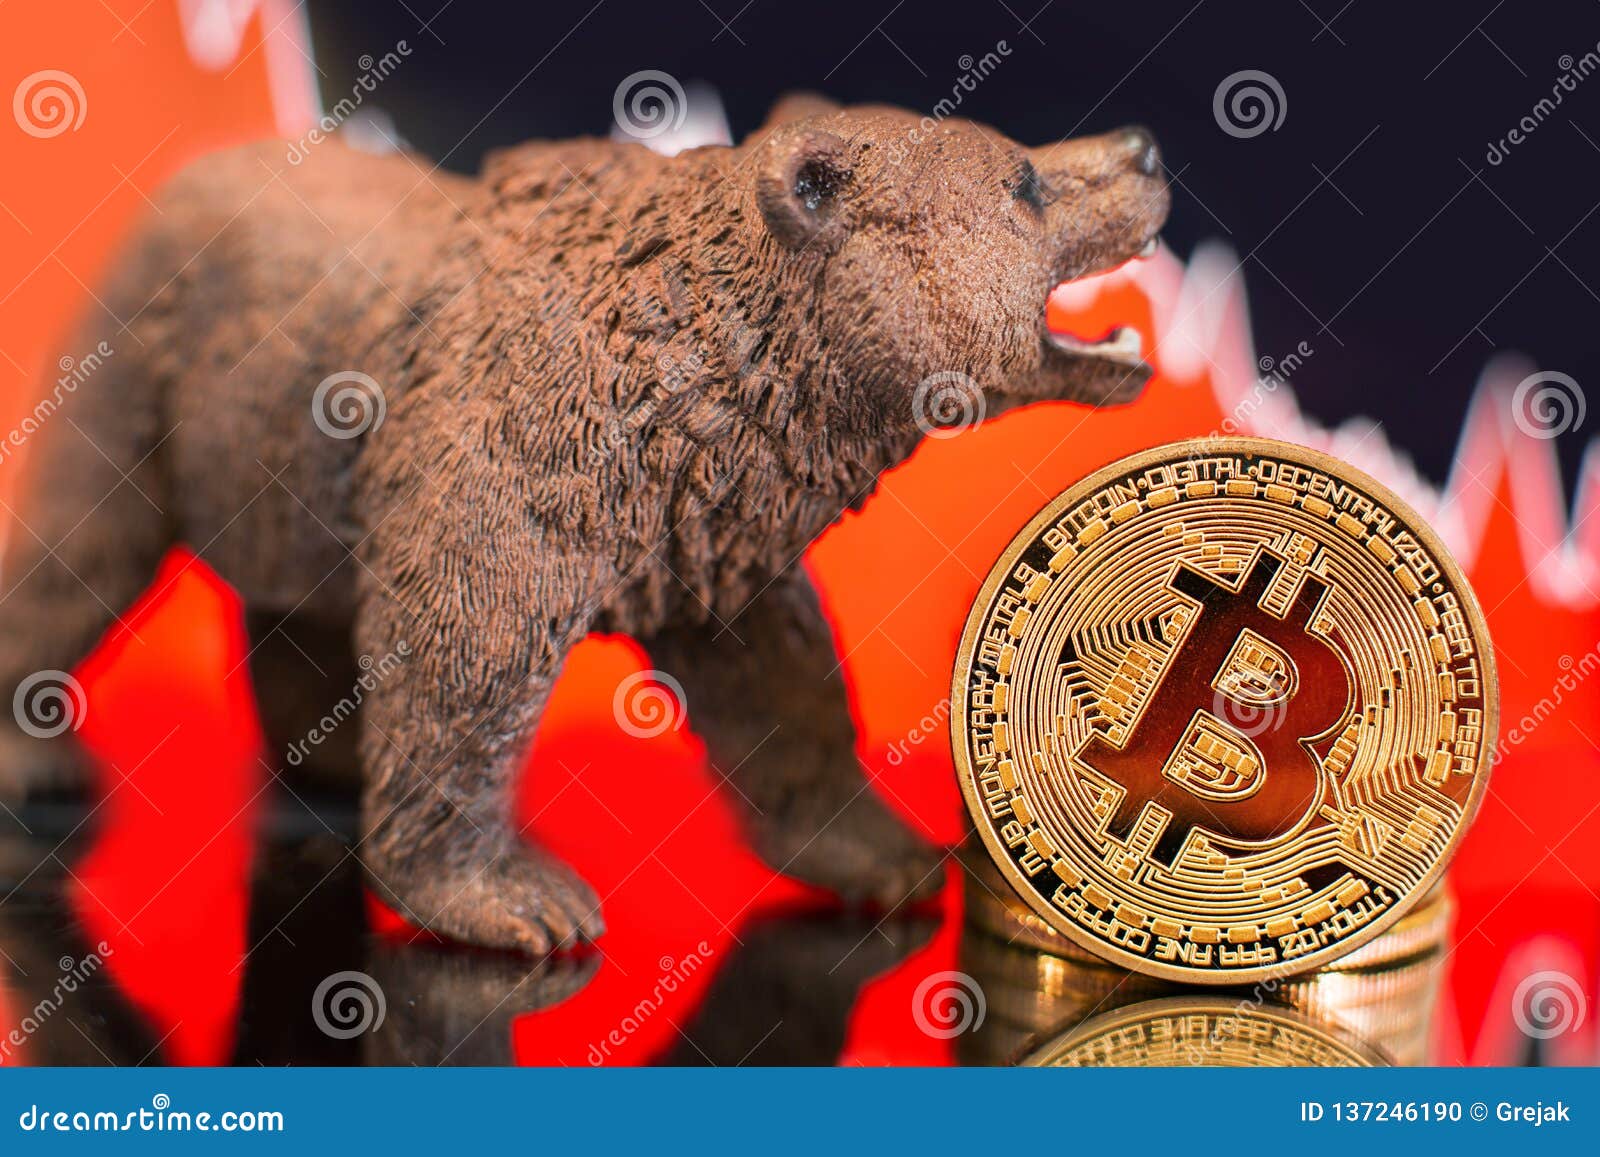 crypto bearish today